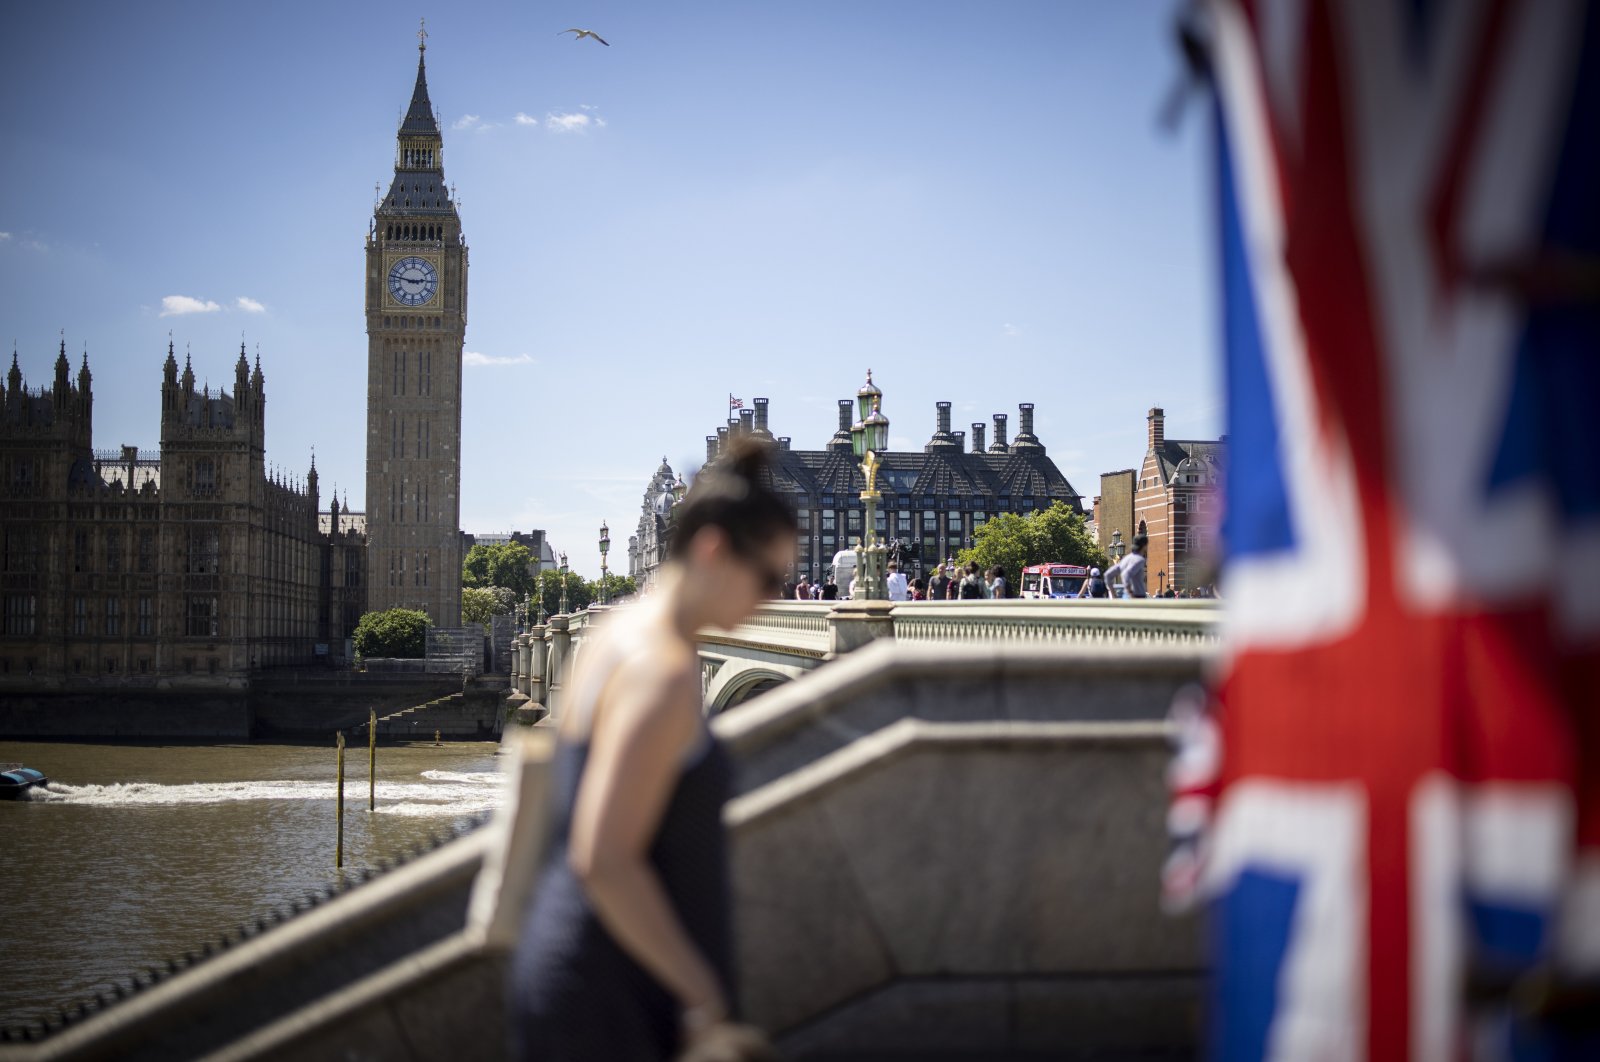 Inggris akan mendapatkan perdana menteri baru pada 5 September karena pemotongan pajak mendominasi kontes